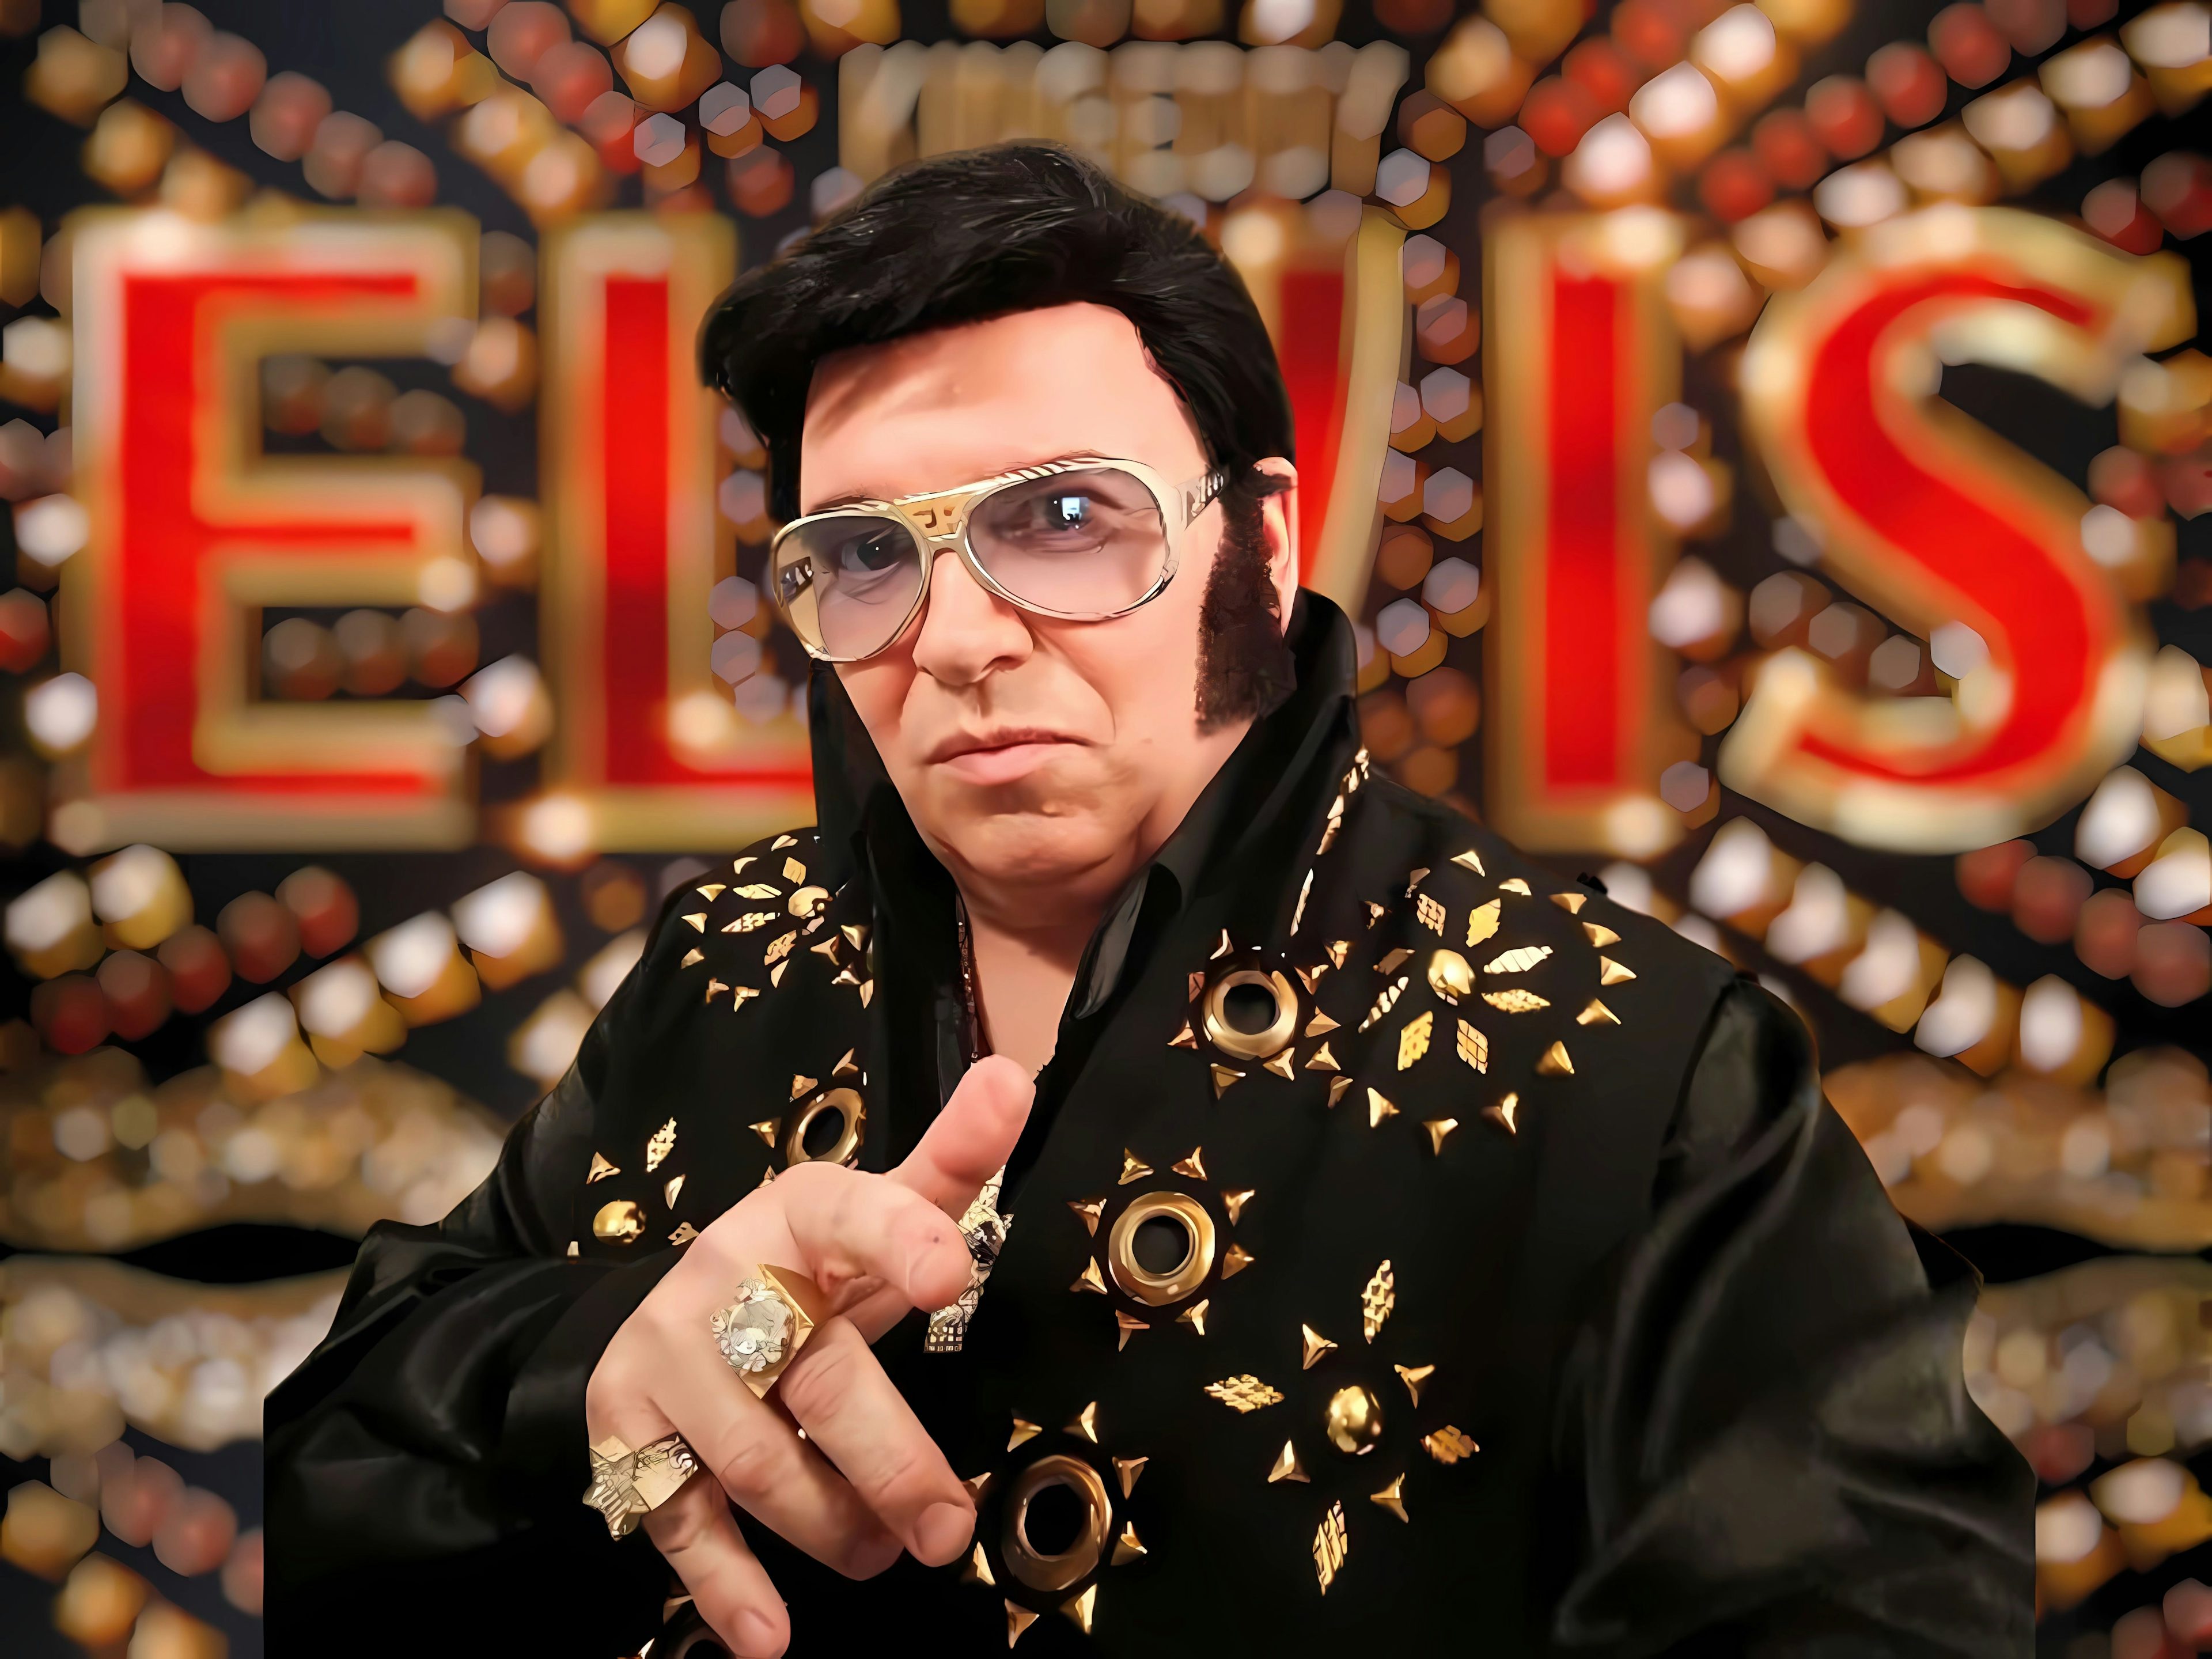 Elvis (a)live Show - Entertainment